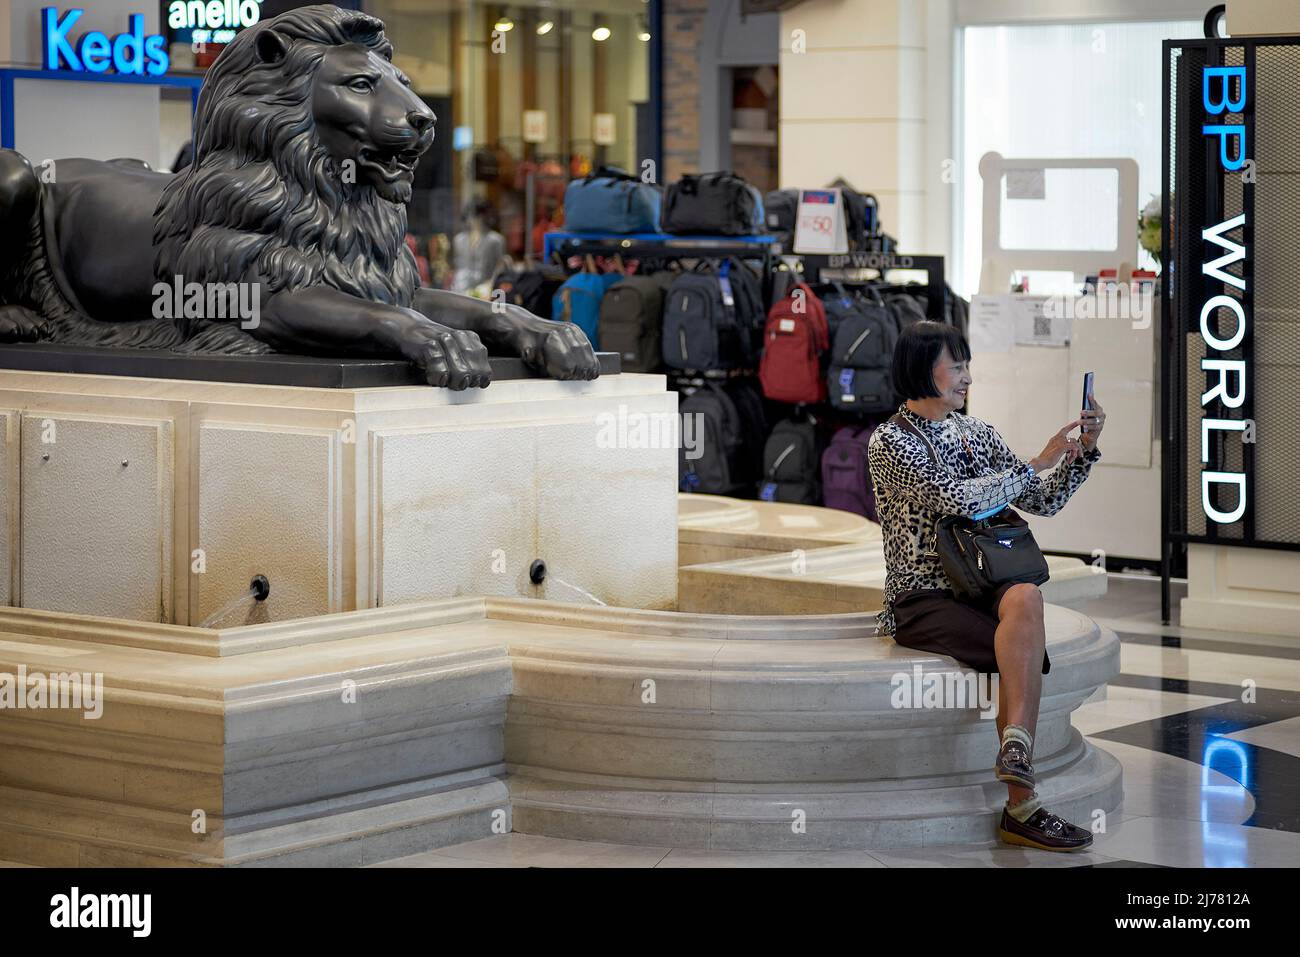 Selfie. Mujer madura tomando fotografías selfie contra un fondo de estatua de león Foto de stock